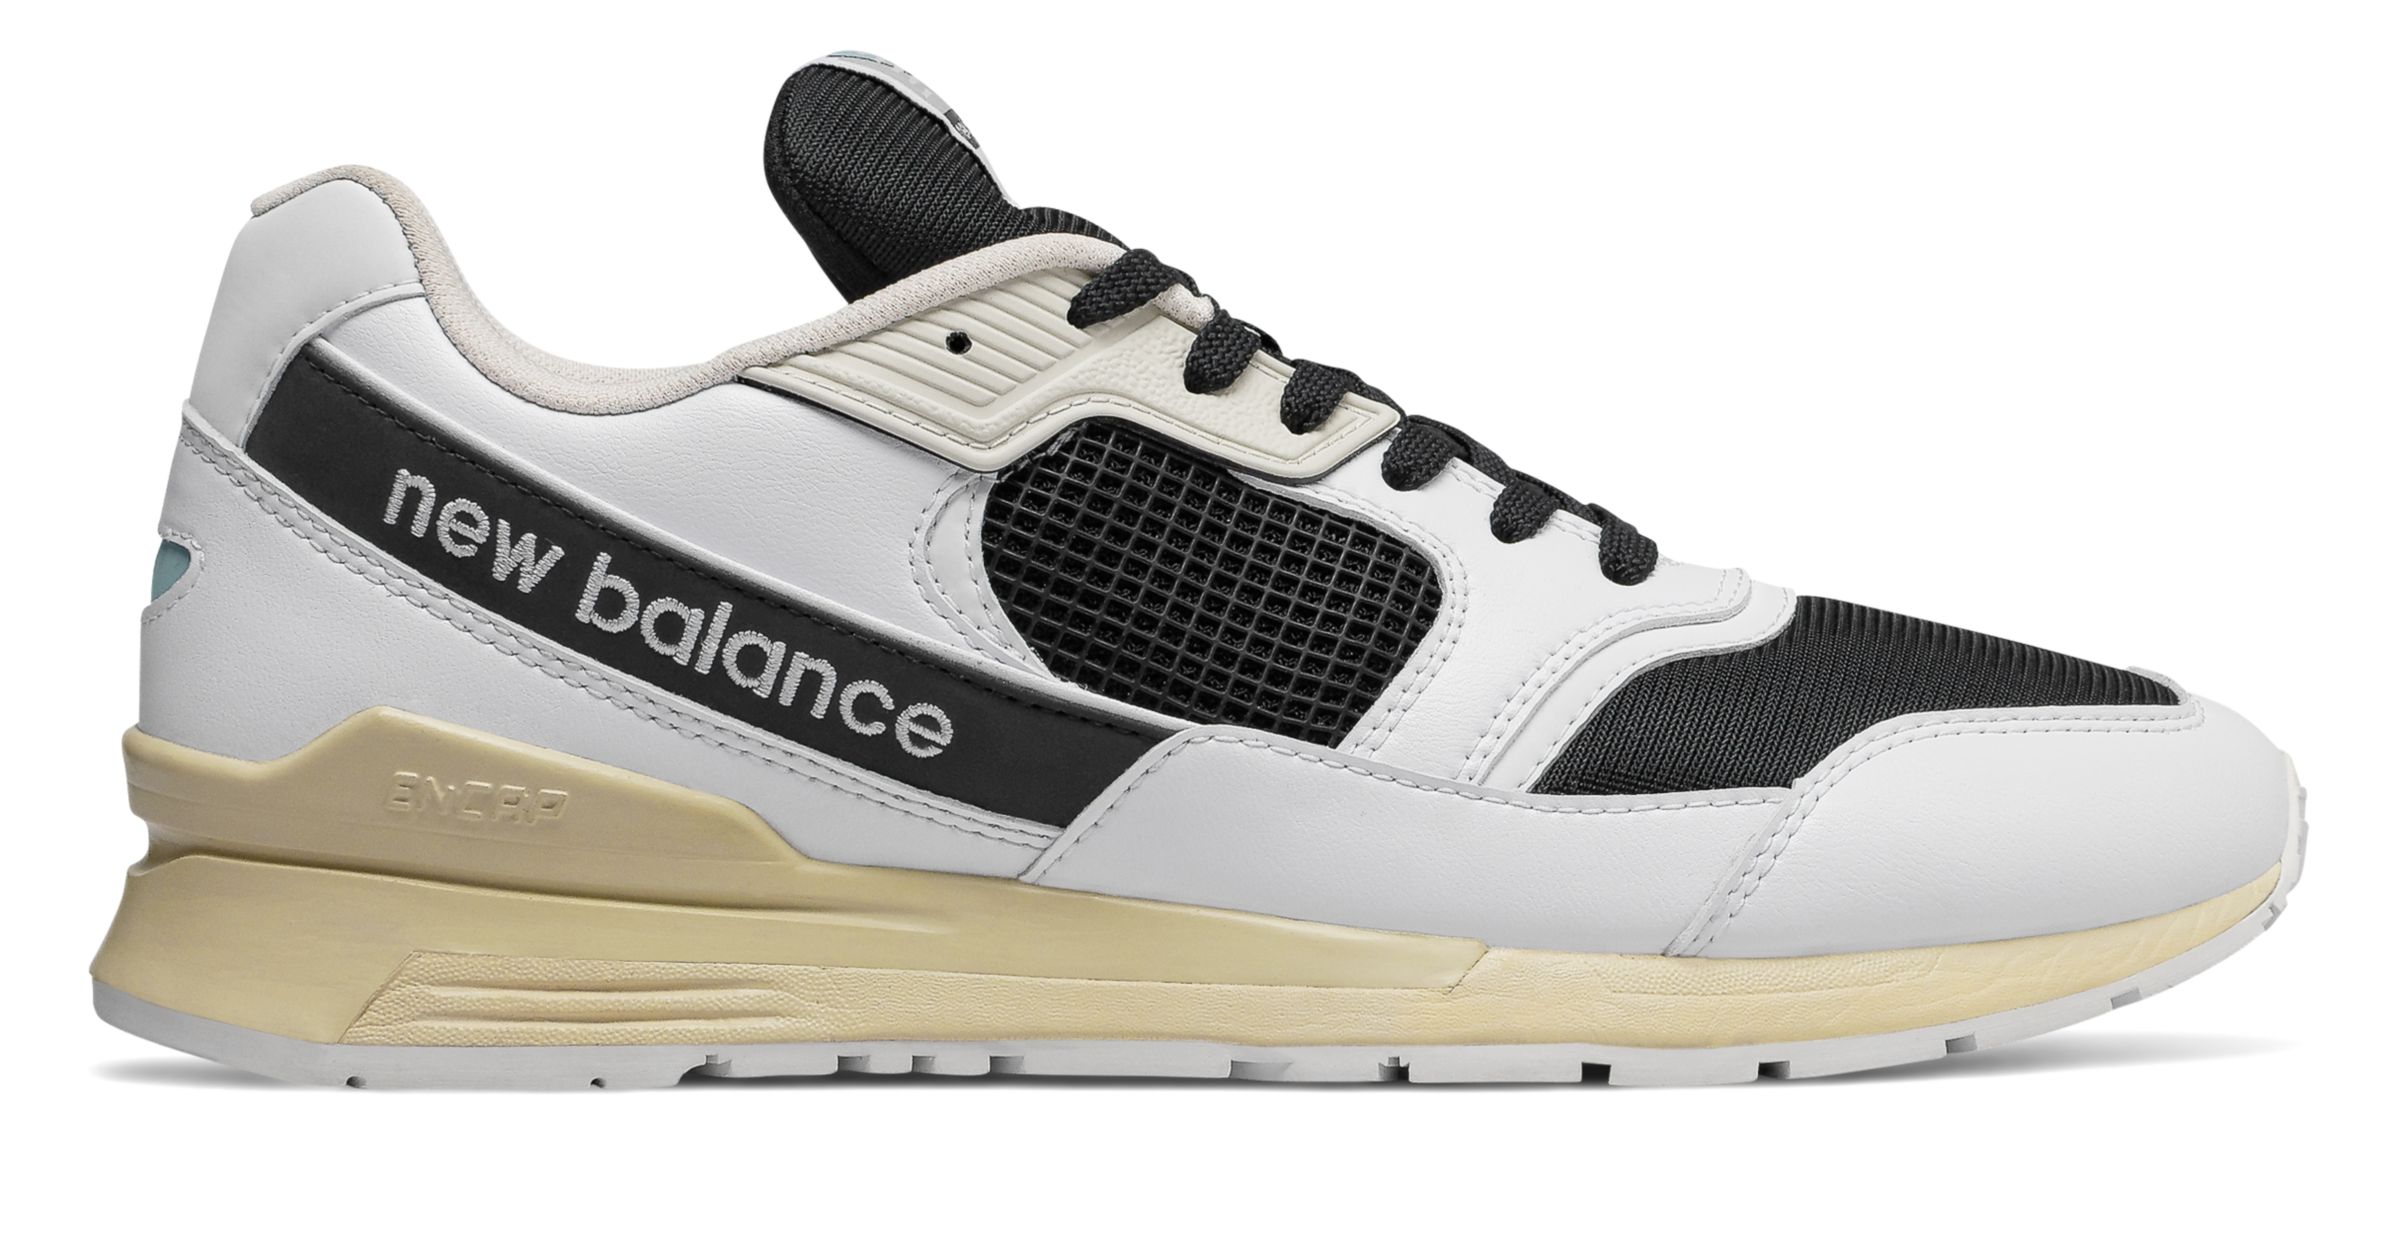 mens new balance 390 running shoe